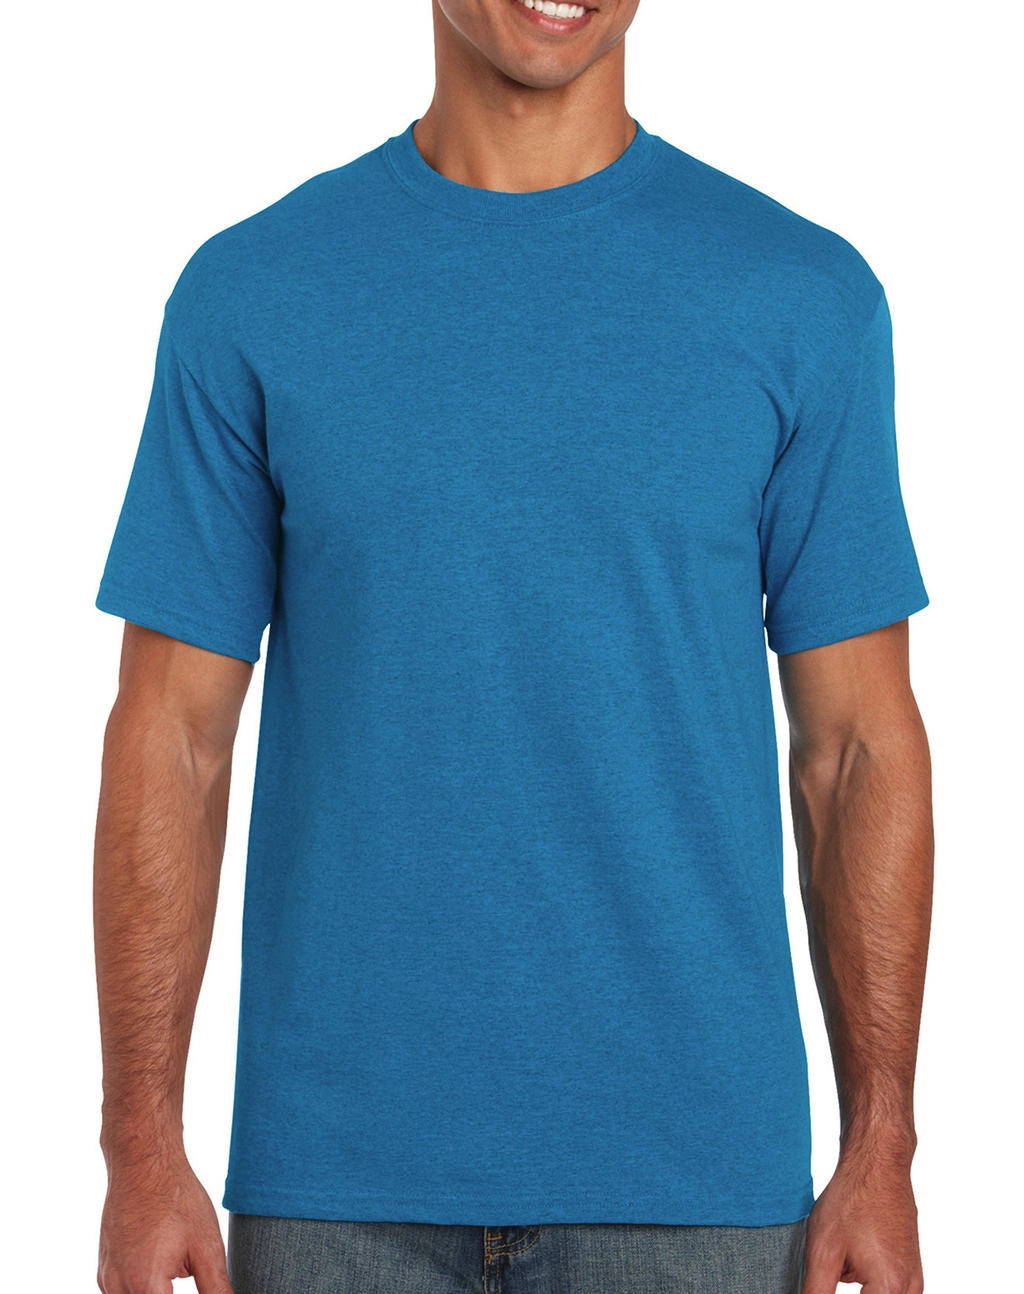 Heavy Cotton Adult T-Shirt zum Besticken und Bedrucken in der Farbe Antique Sapphire mit Ihren Logo, Schriftzug oder Motiv.